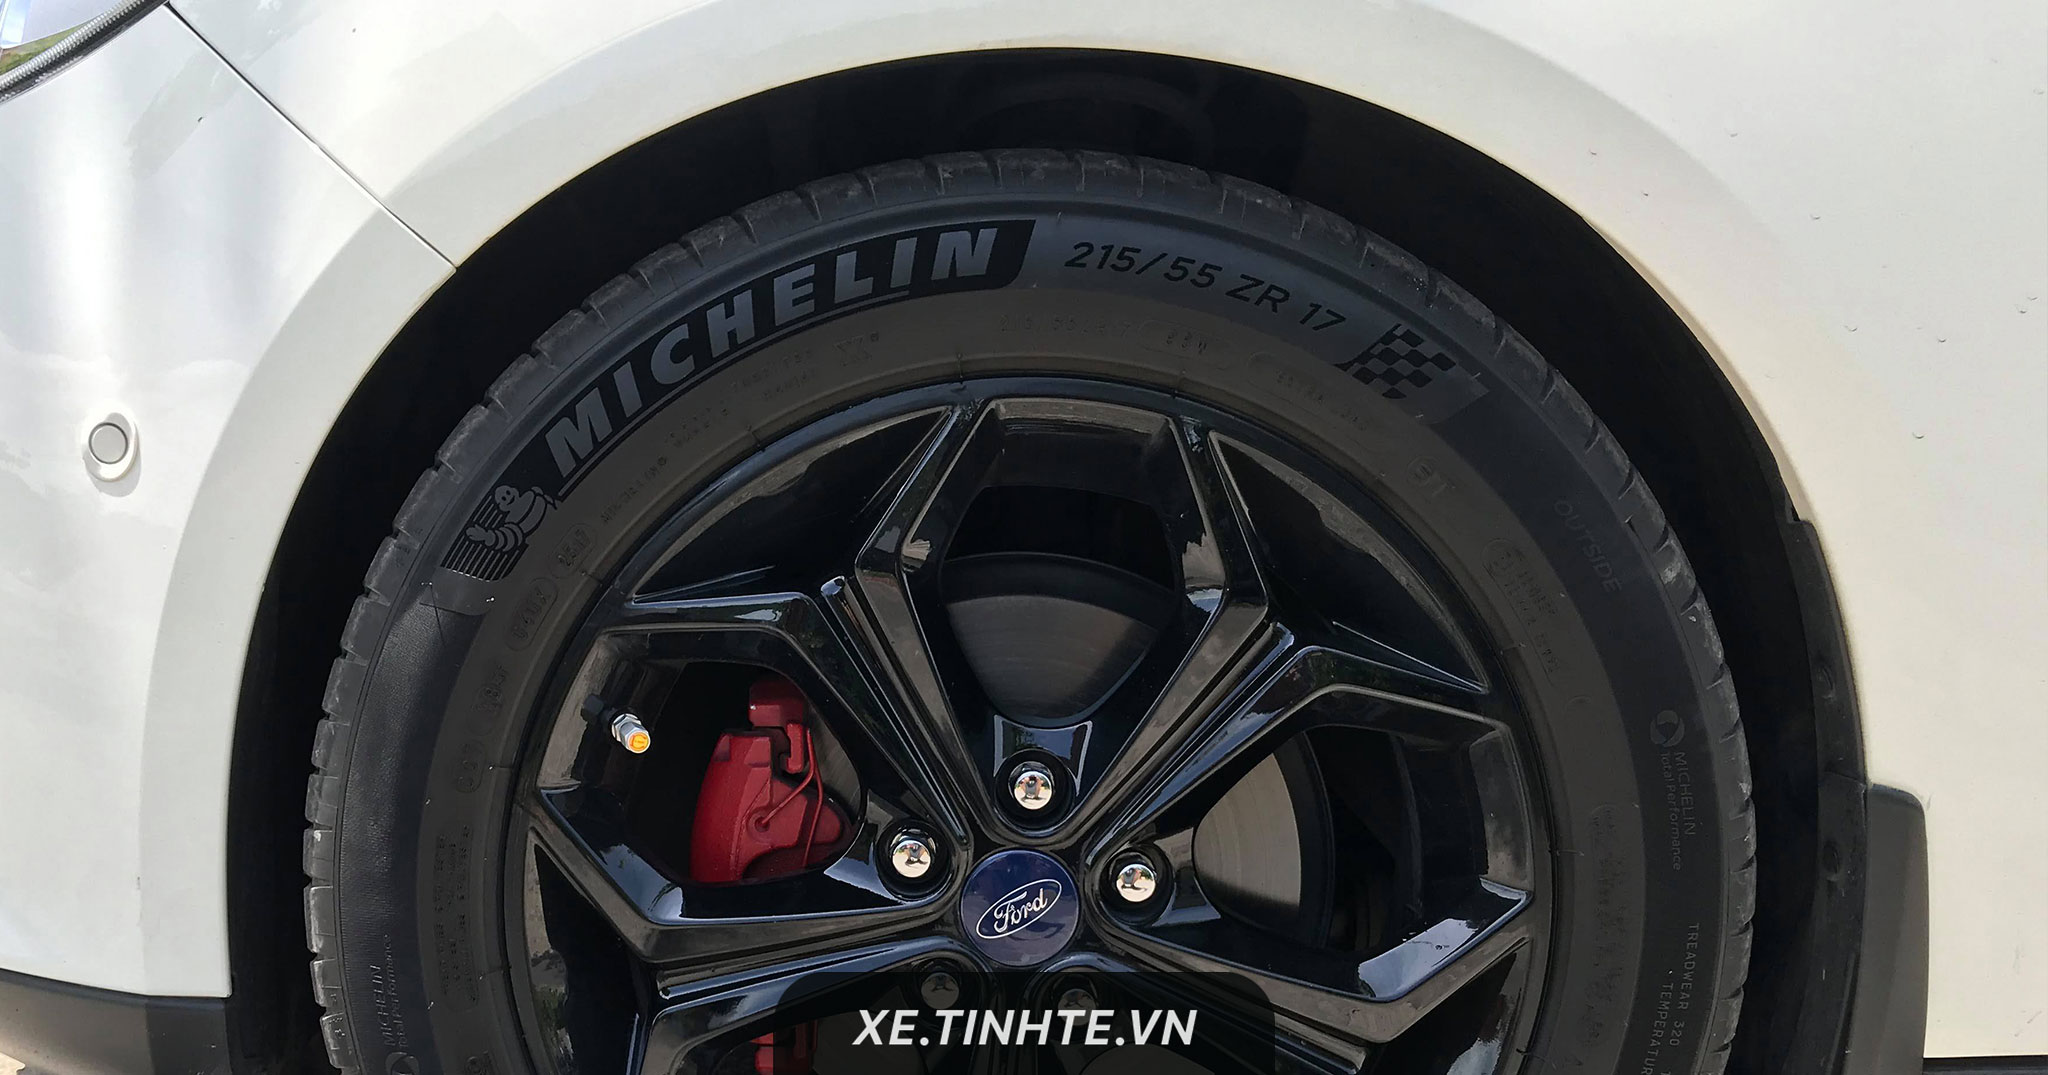 Michelin lên kế hoạch dùng gỗ và ứng dụng công nghệ in 3D để sản xuất lốp xe